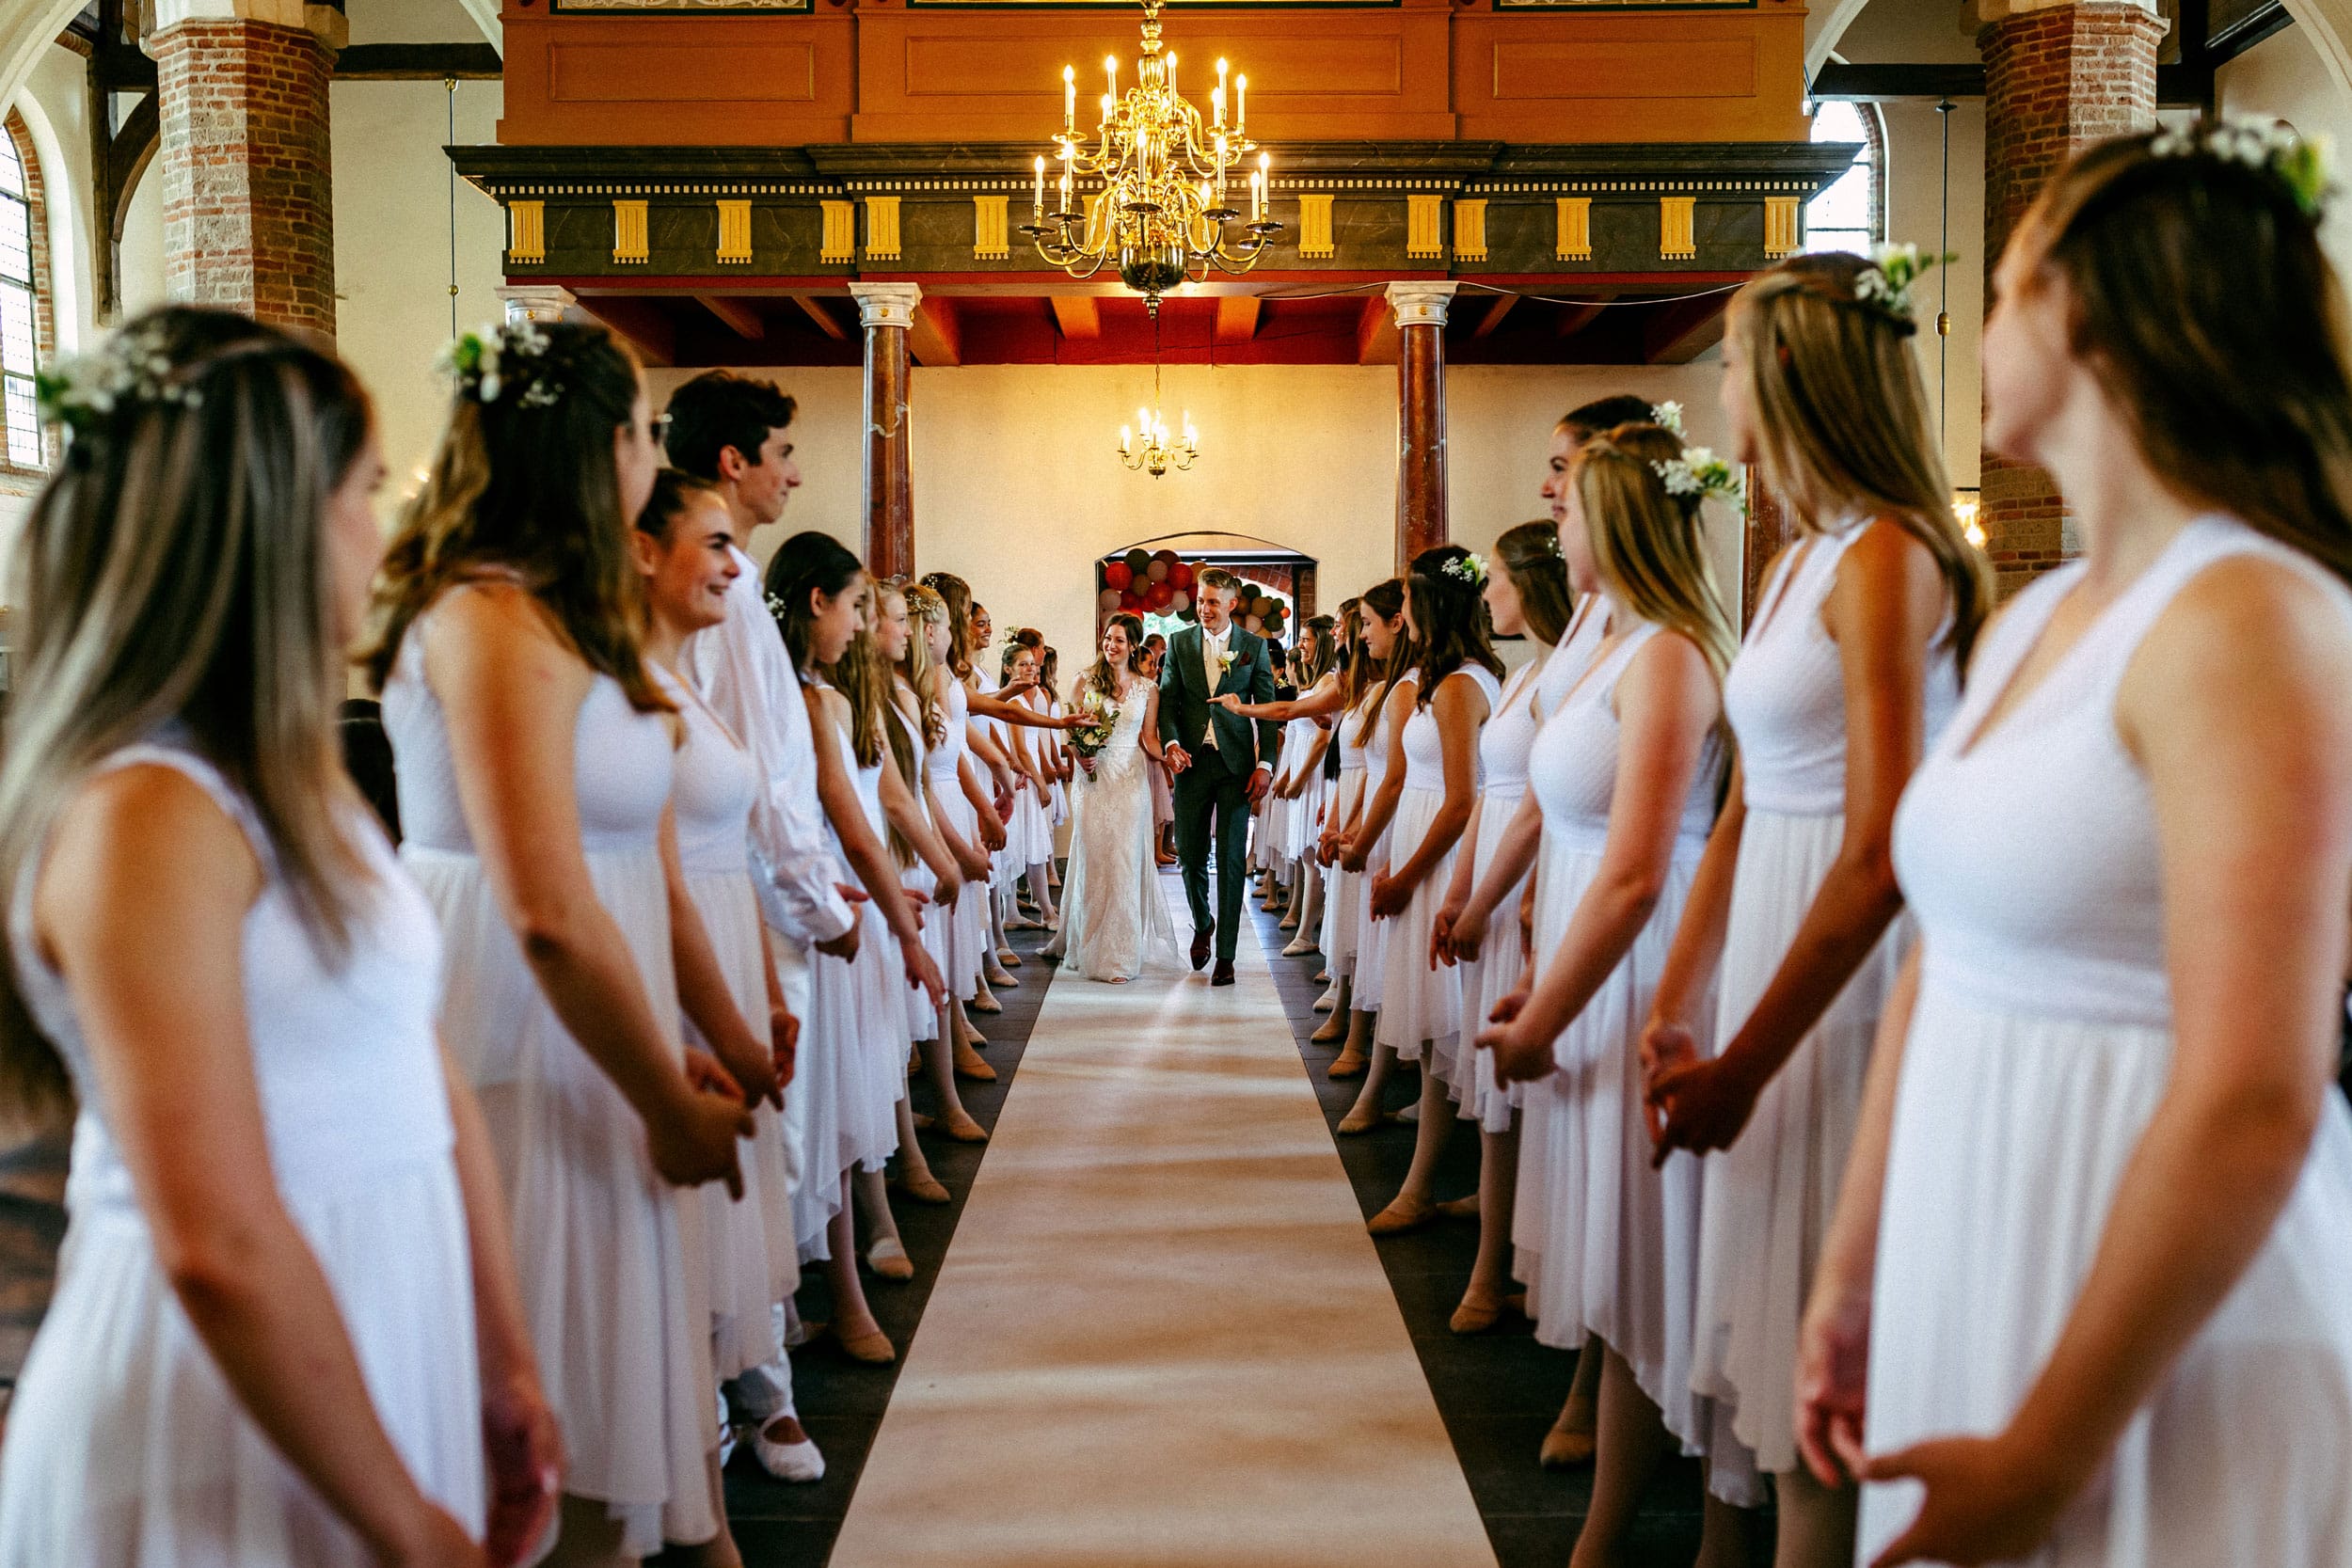 Een huwelijksceremonie in een kerk met bruidsmeisjes die door het gangpad lopen.